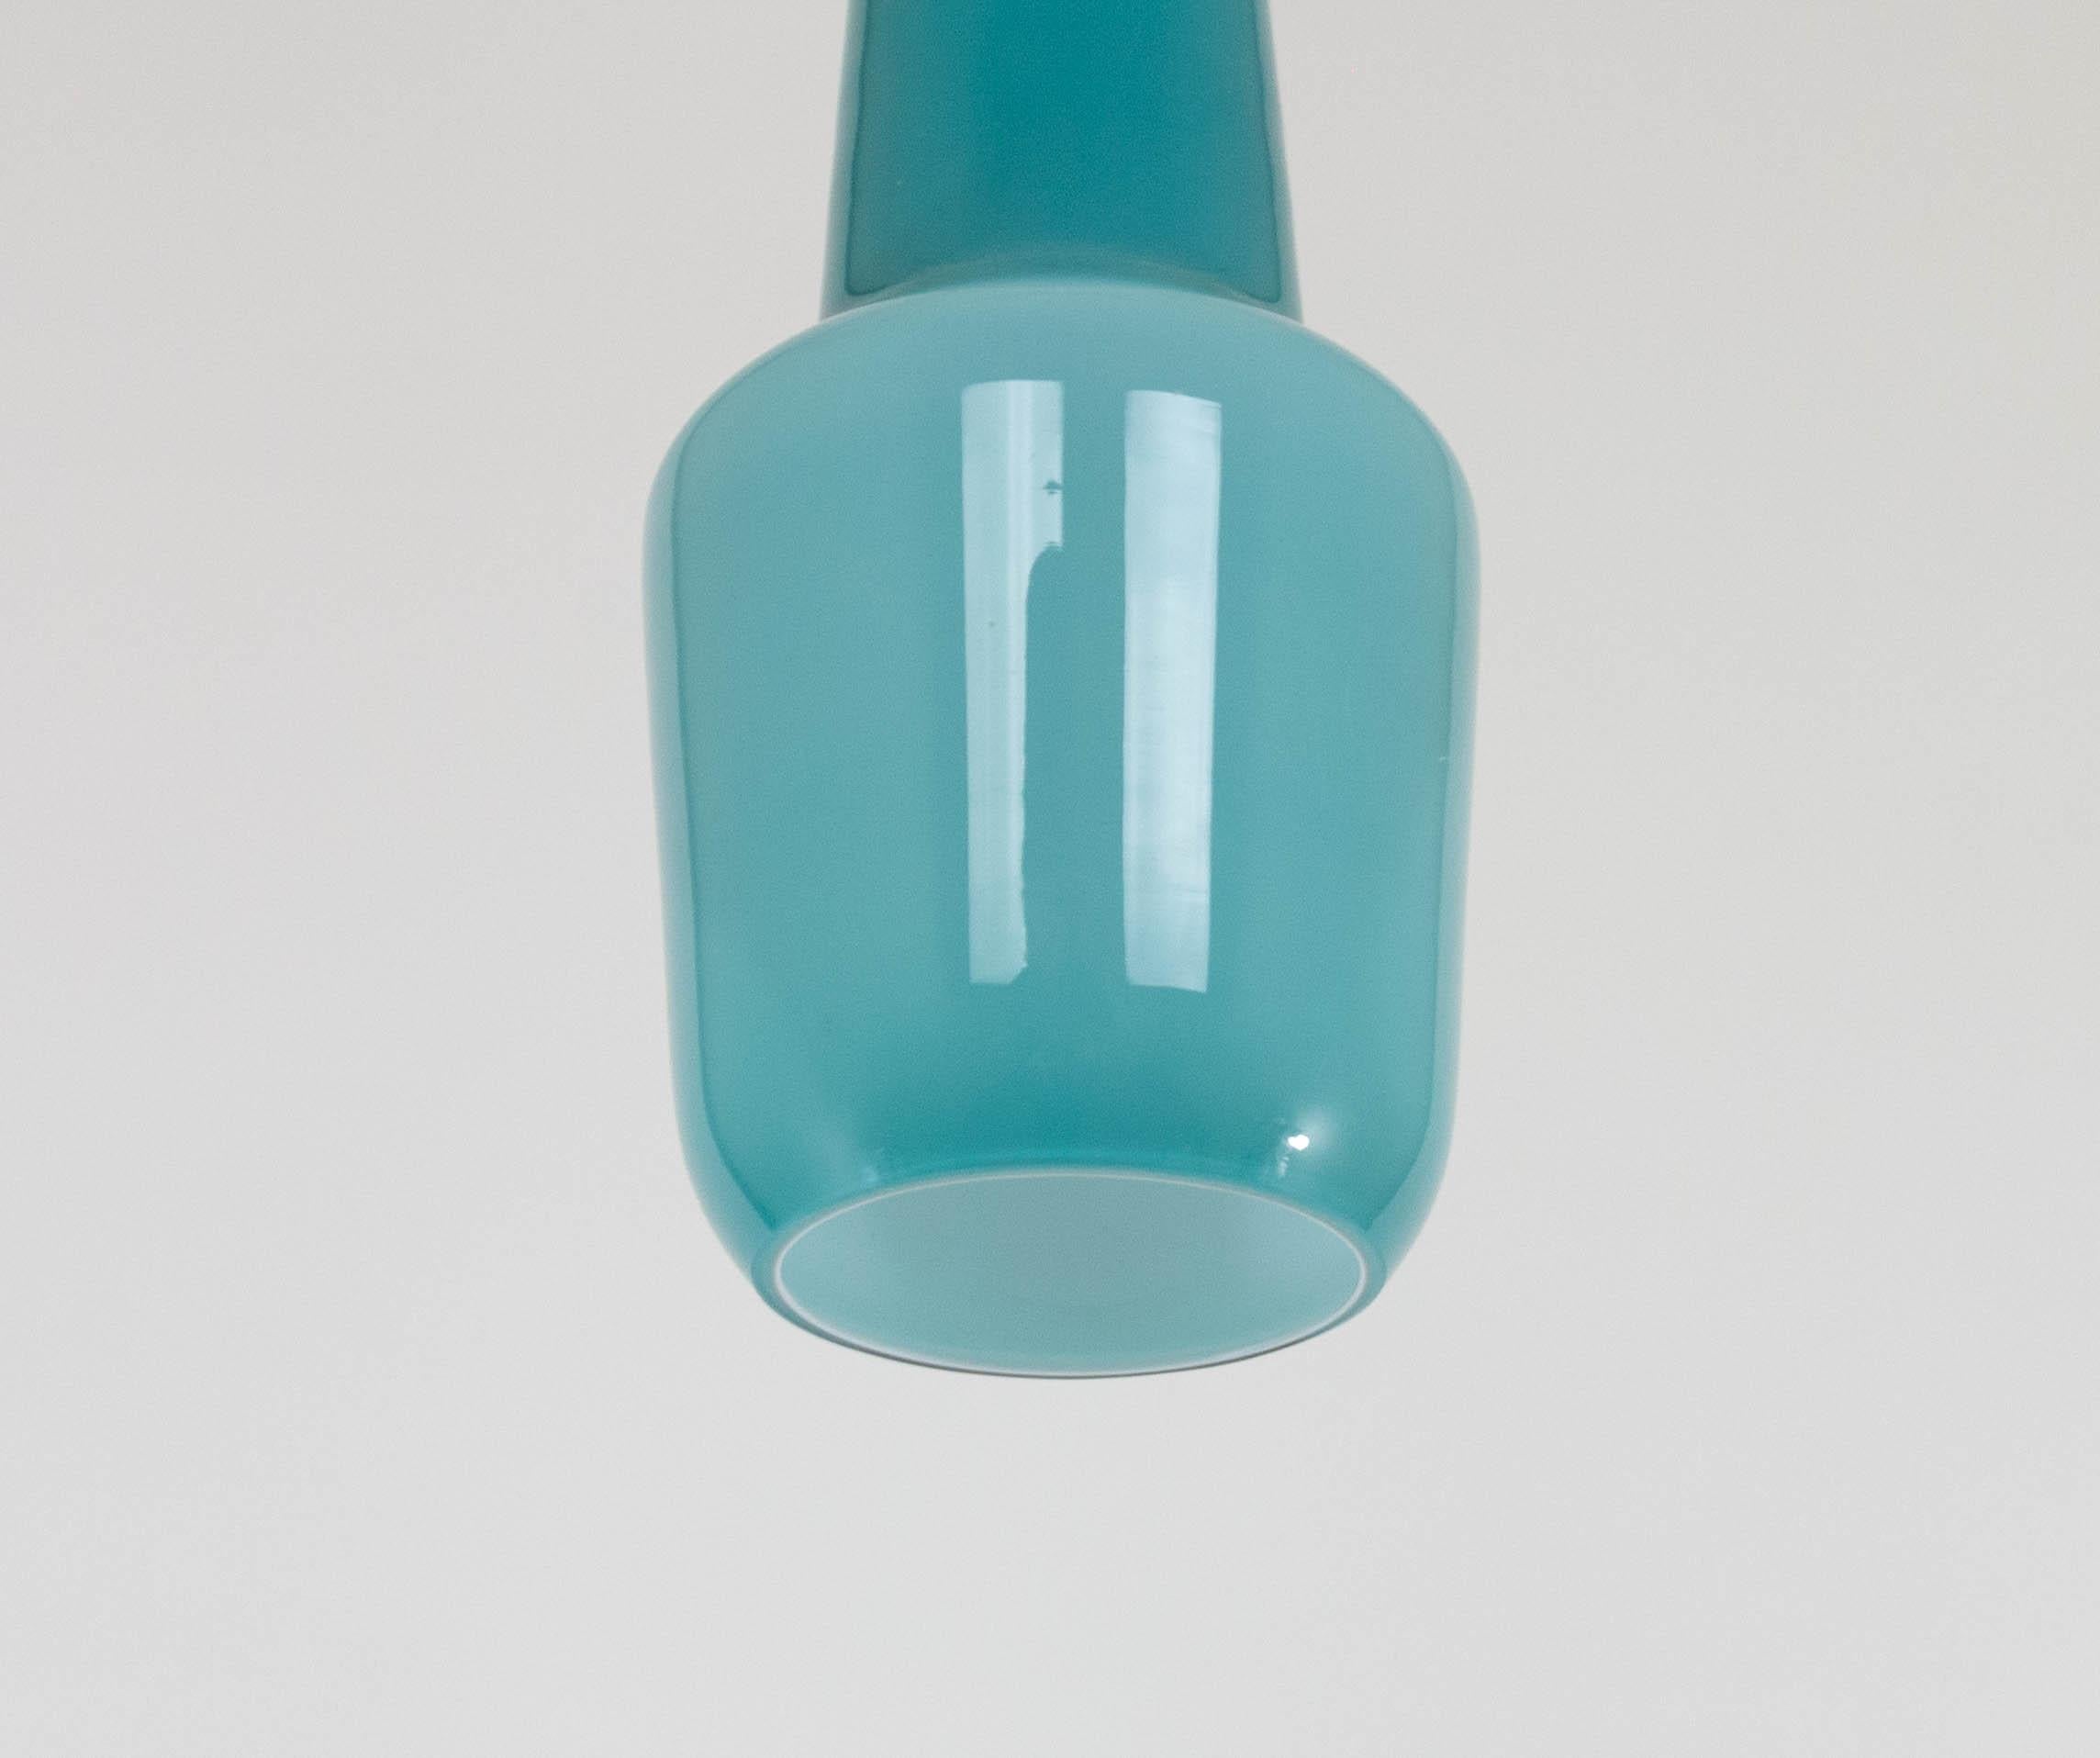 Italian Turquoise Murano Glass Pendant by Massimo Vignelli for Venini, 1950s For Sale